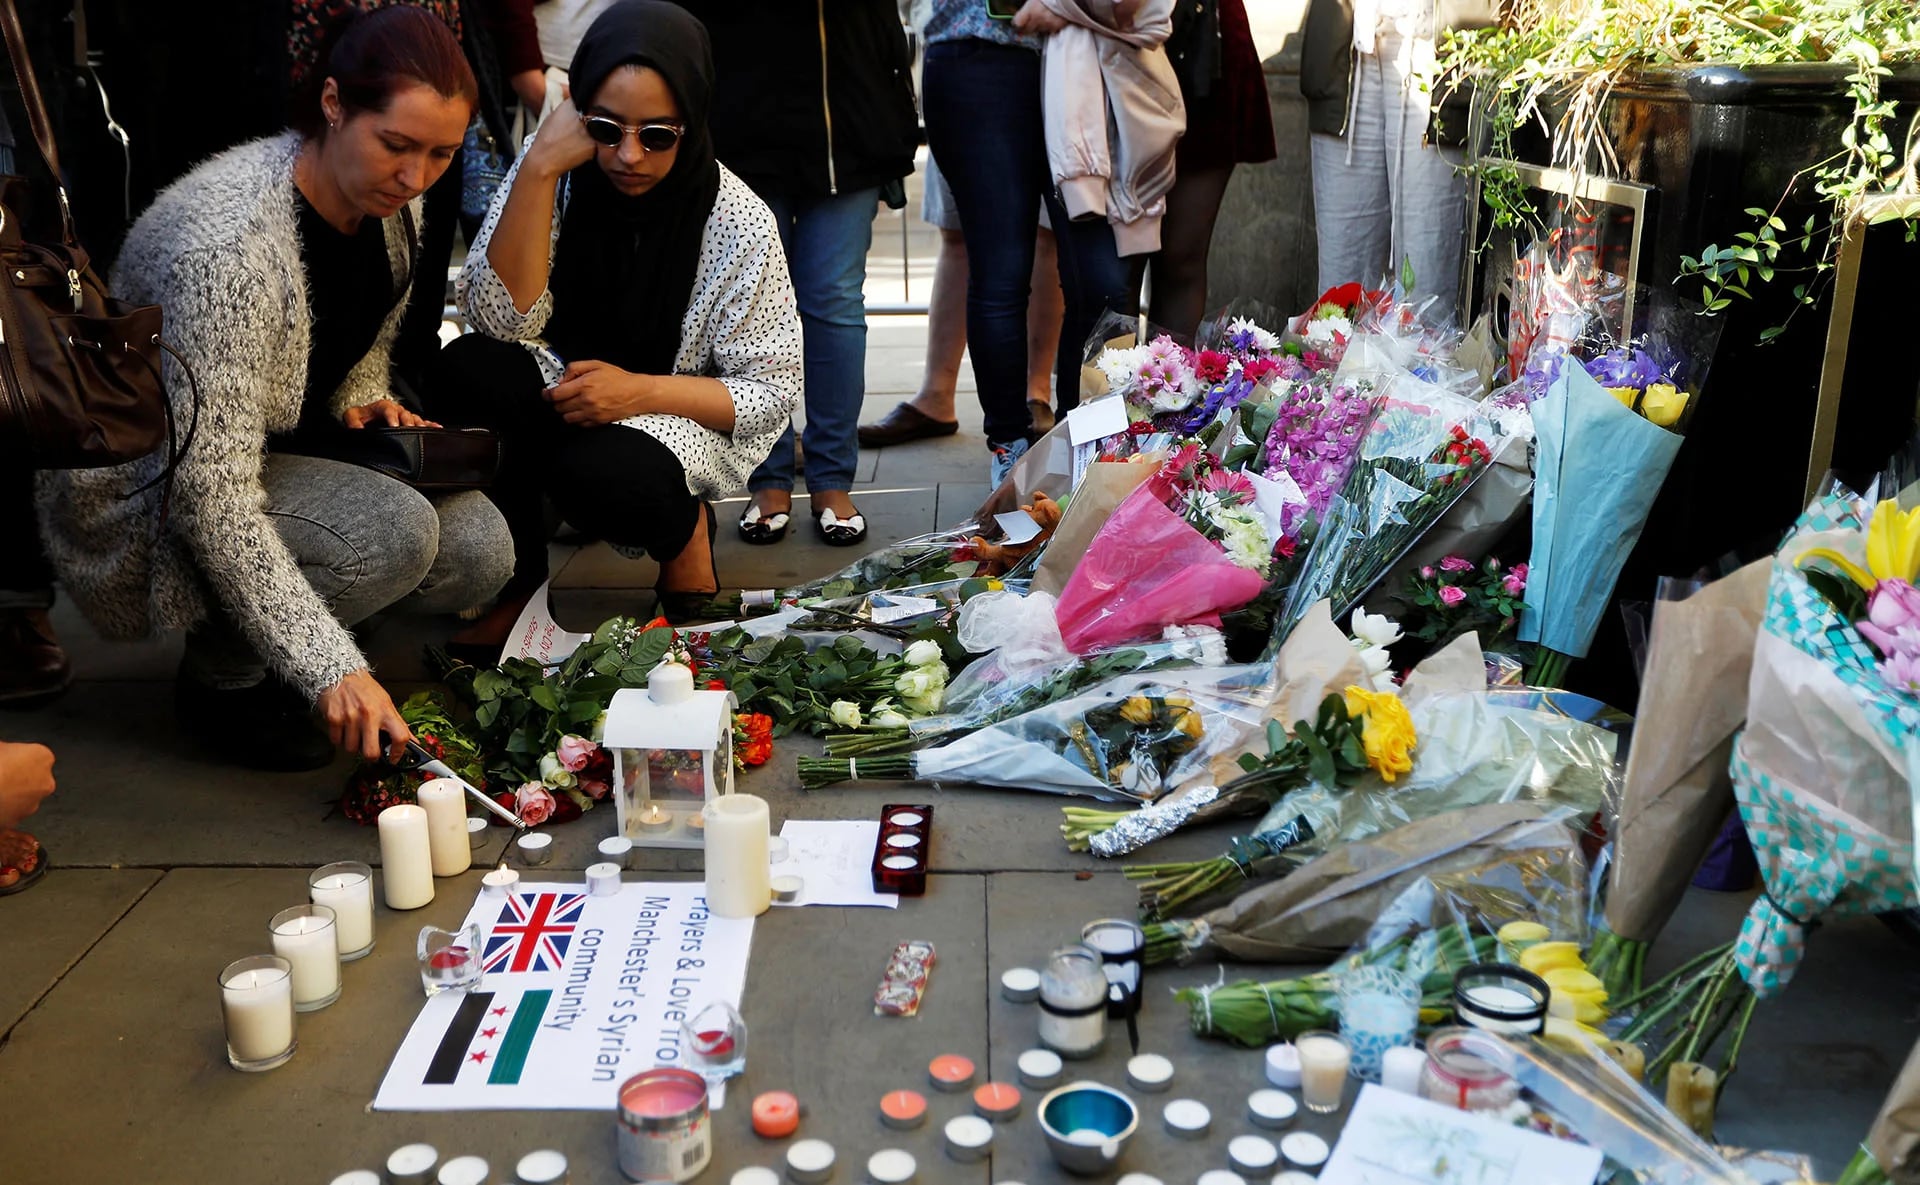 Un grupo de mujeres prende velas en memoria de las víctimas del atentado (REUTERS)